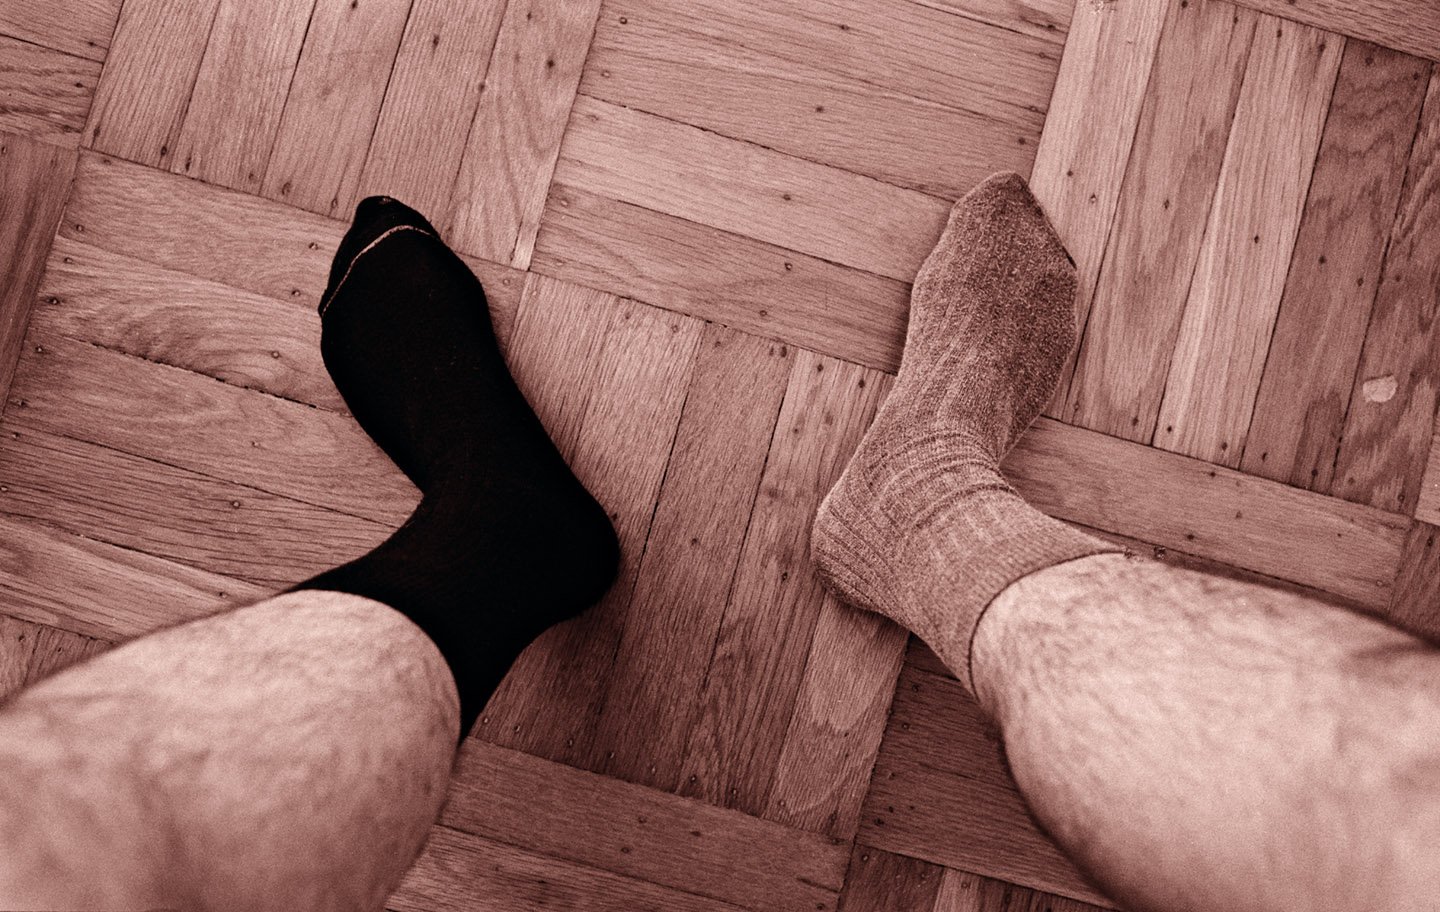 socks.jpg